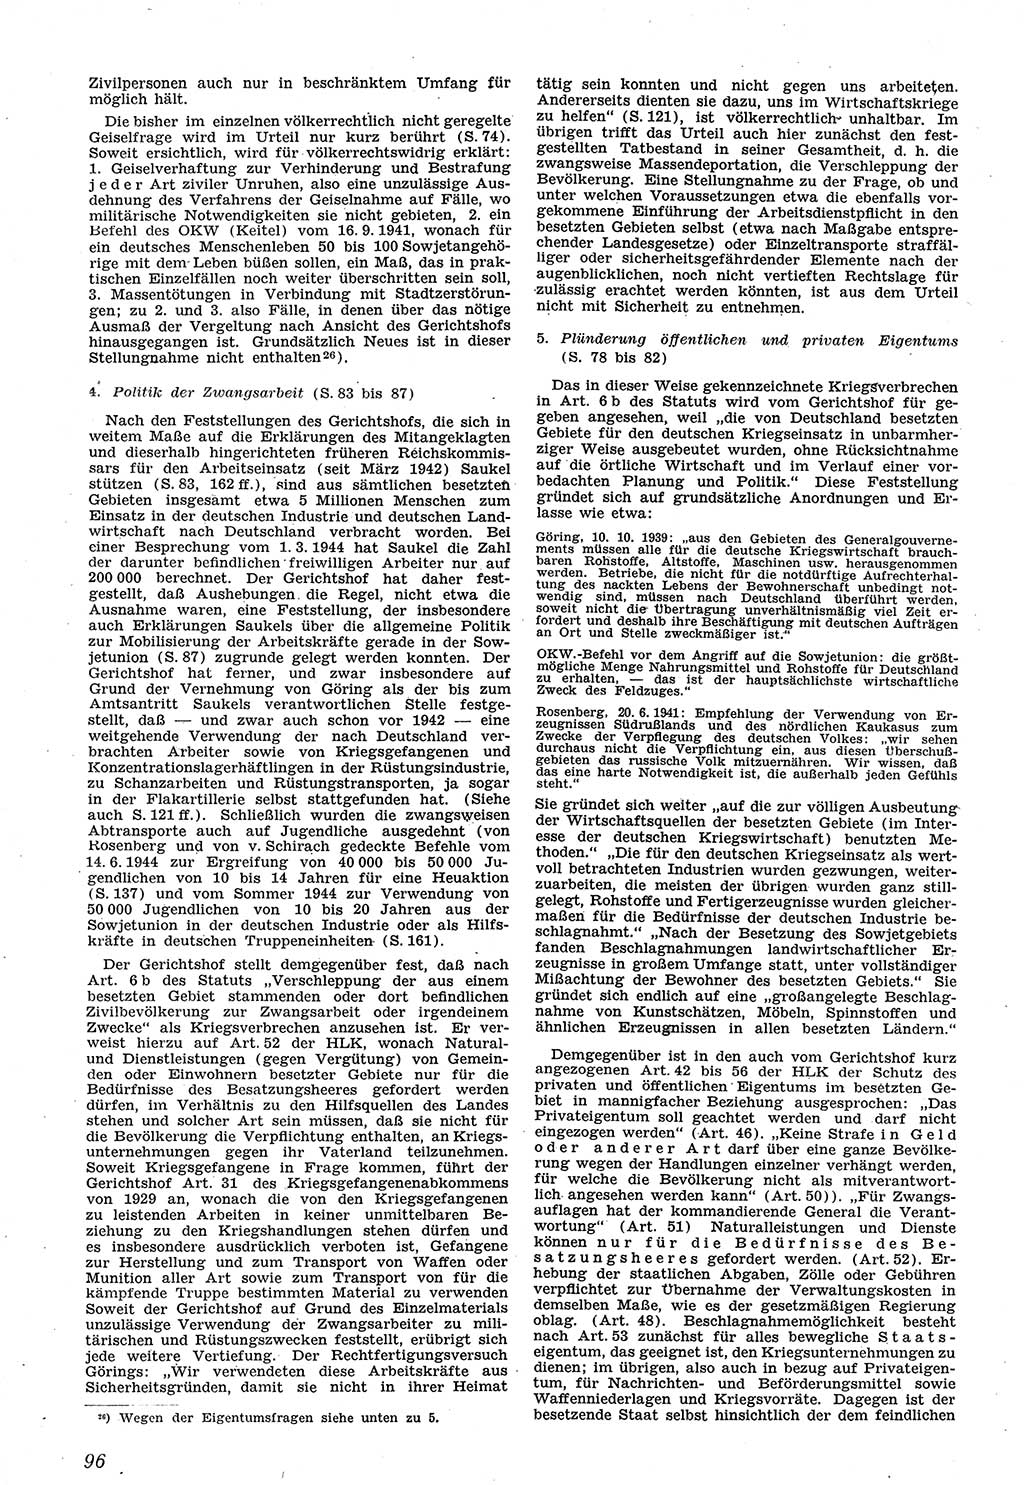 Neue Justiz (NJ), Zeitschrift für Recht und Rechtswissenschaft [Sowjetische Besatzungszone (SBZ) Deutschland], 1. Jahrgang 1947, Seite 96 (NJ SBZ Dtl. 1947, S. 96)